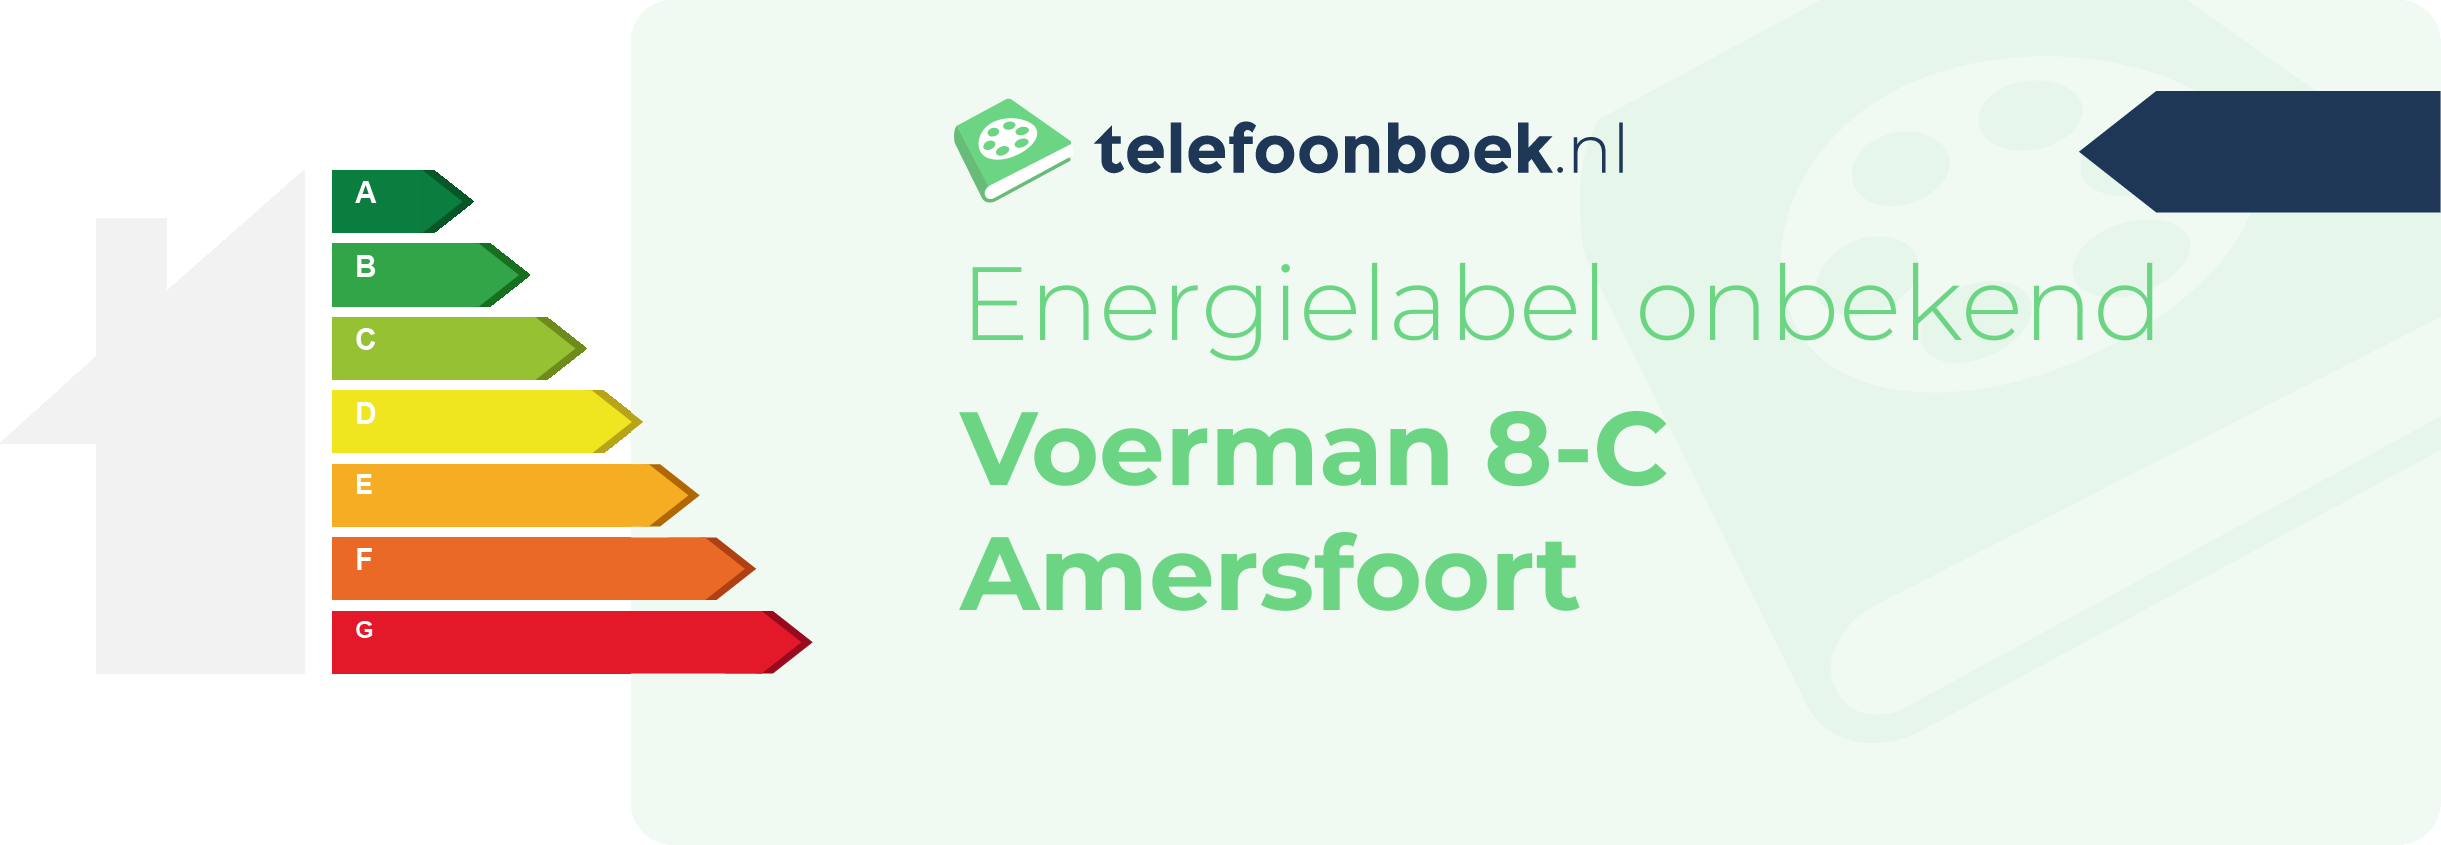 Energielabel Voerman 8-C Amersfoort